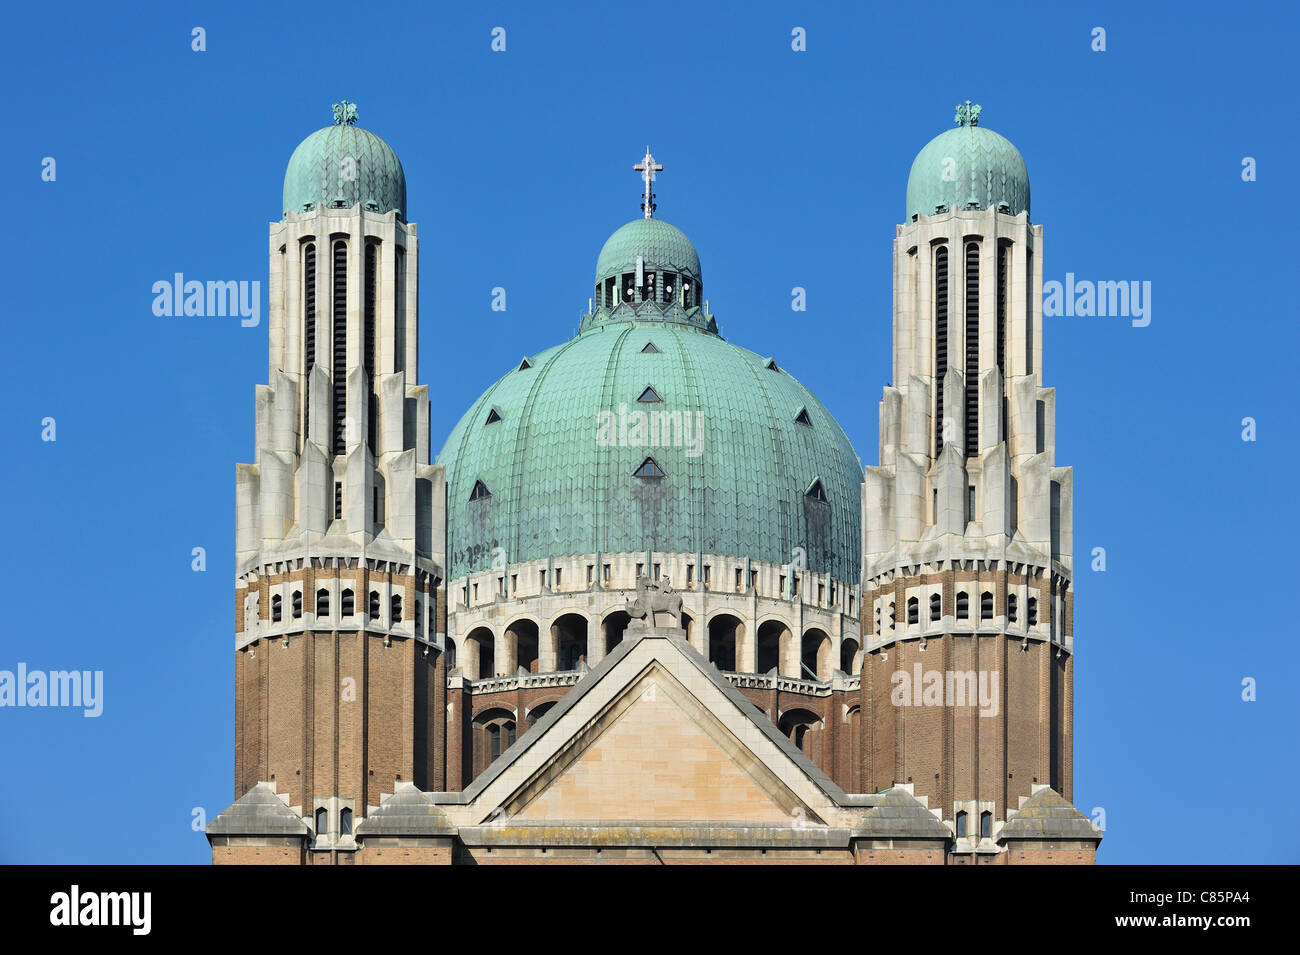 Basilique Nationale du Sacred-Heart de Koekelberg, le plus grand bâtiment de style Art déco dans le monde, Bruxelles, Belgique Banque D'Images